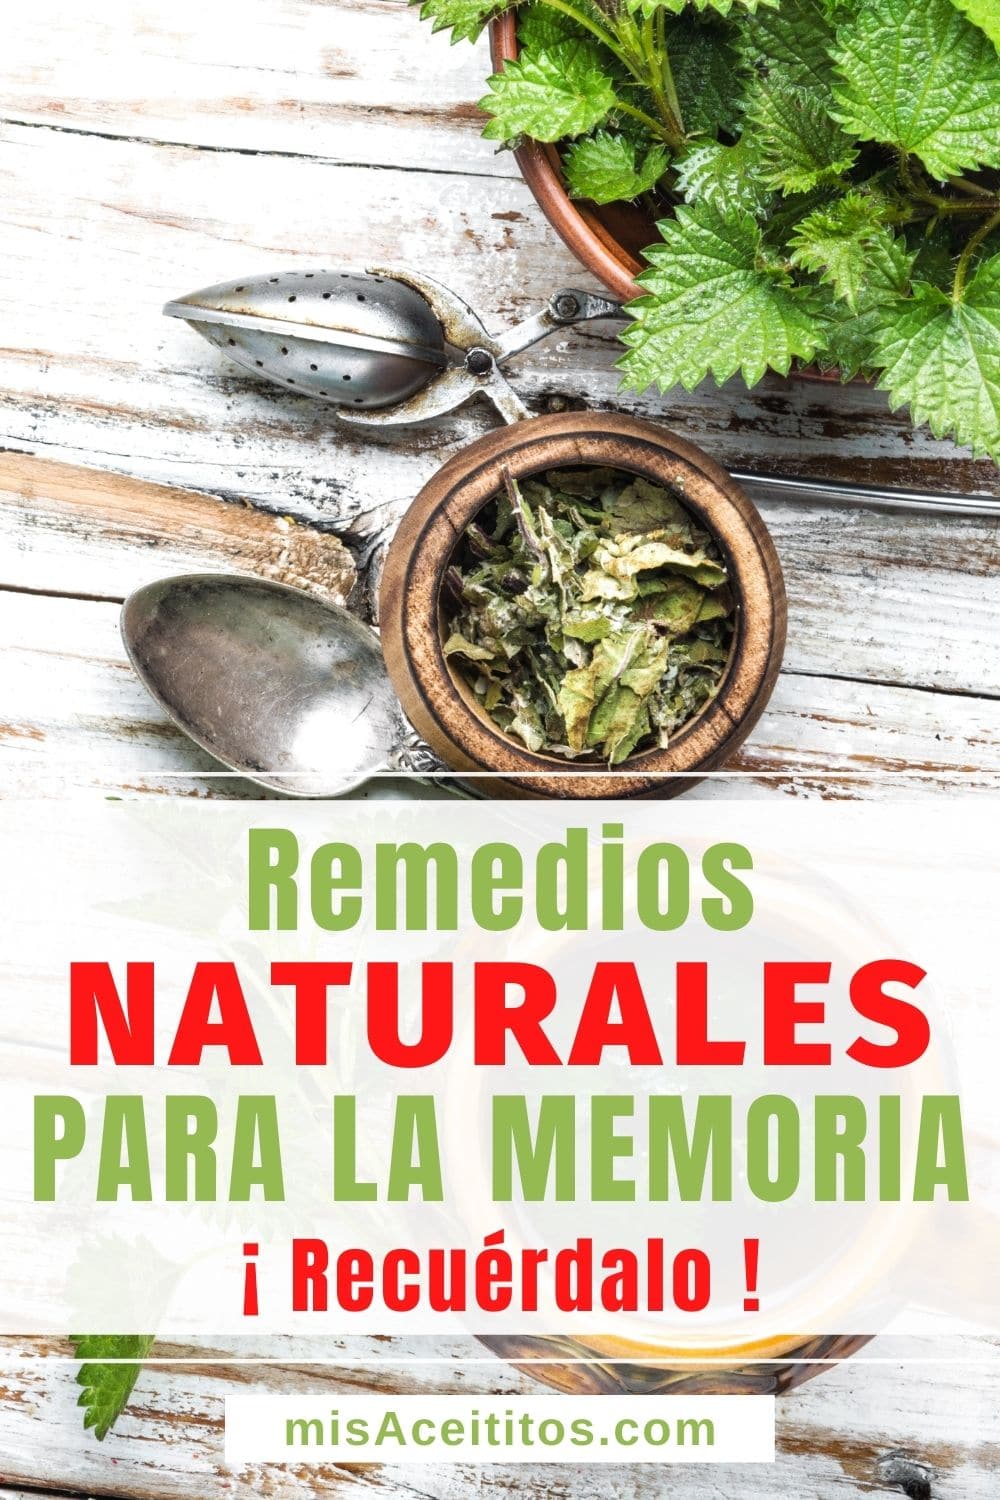 Los mejores remedios naturales para la memoria que no te puedes perder.